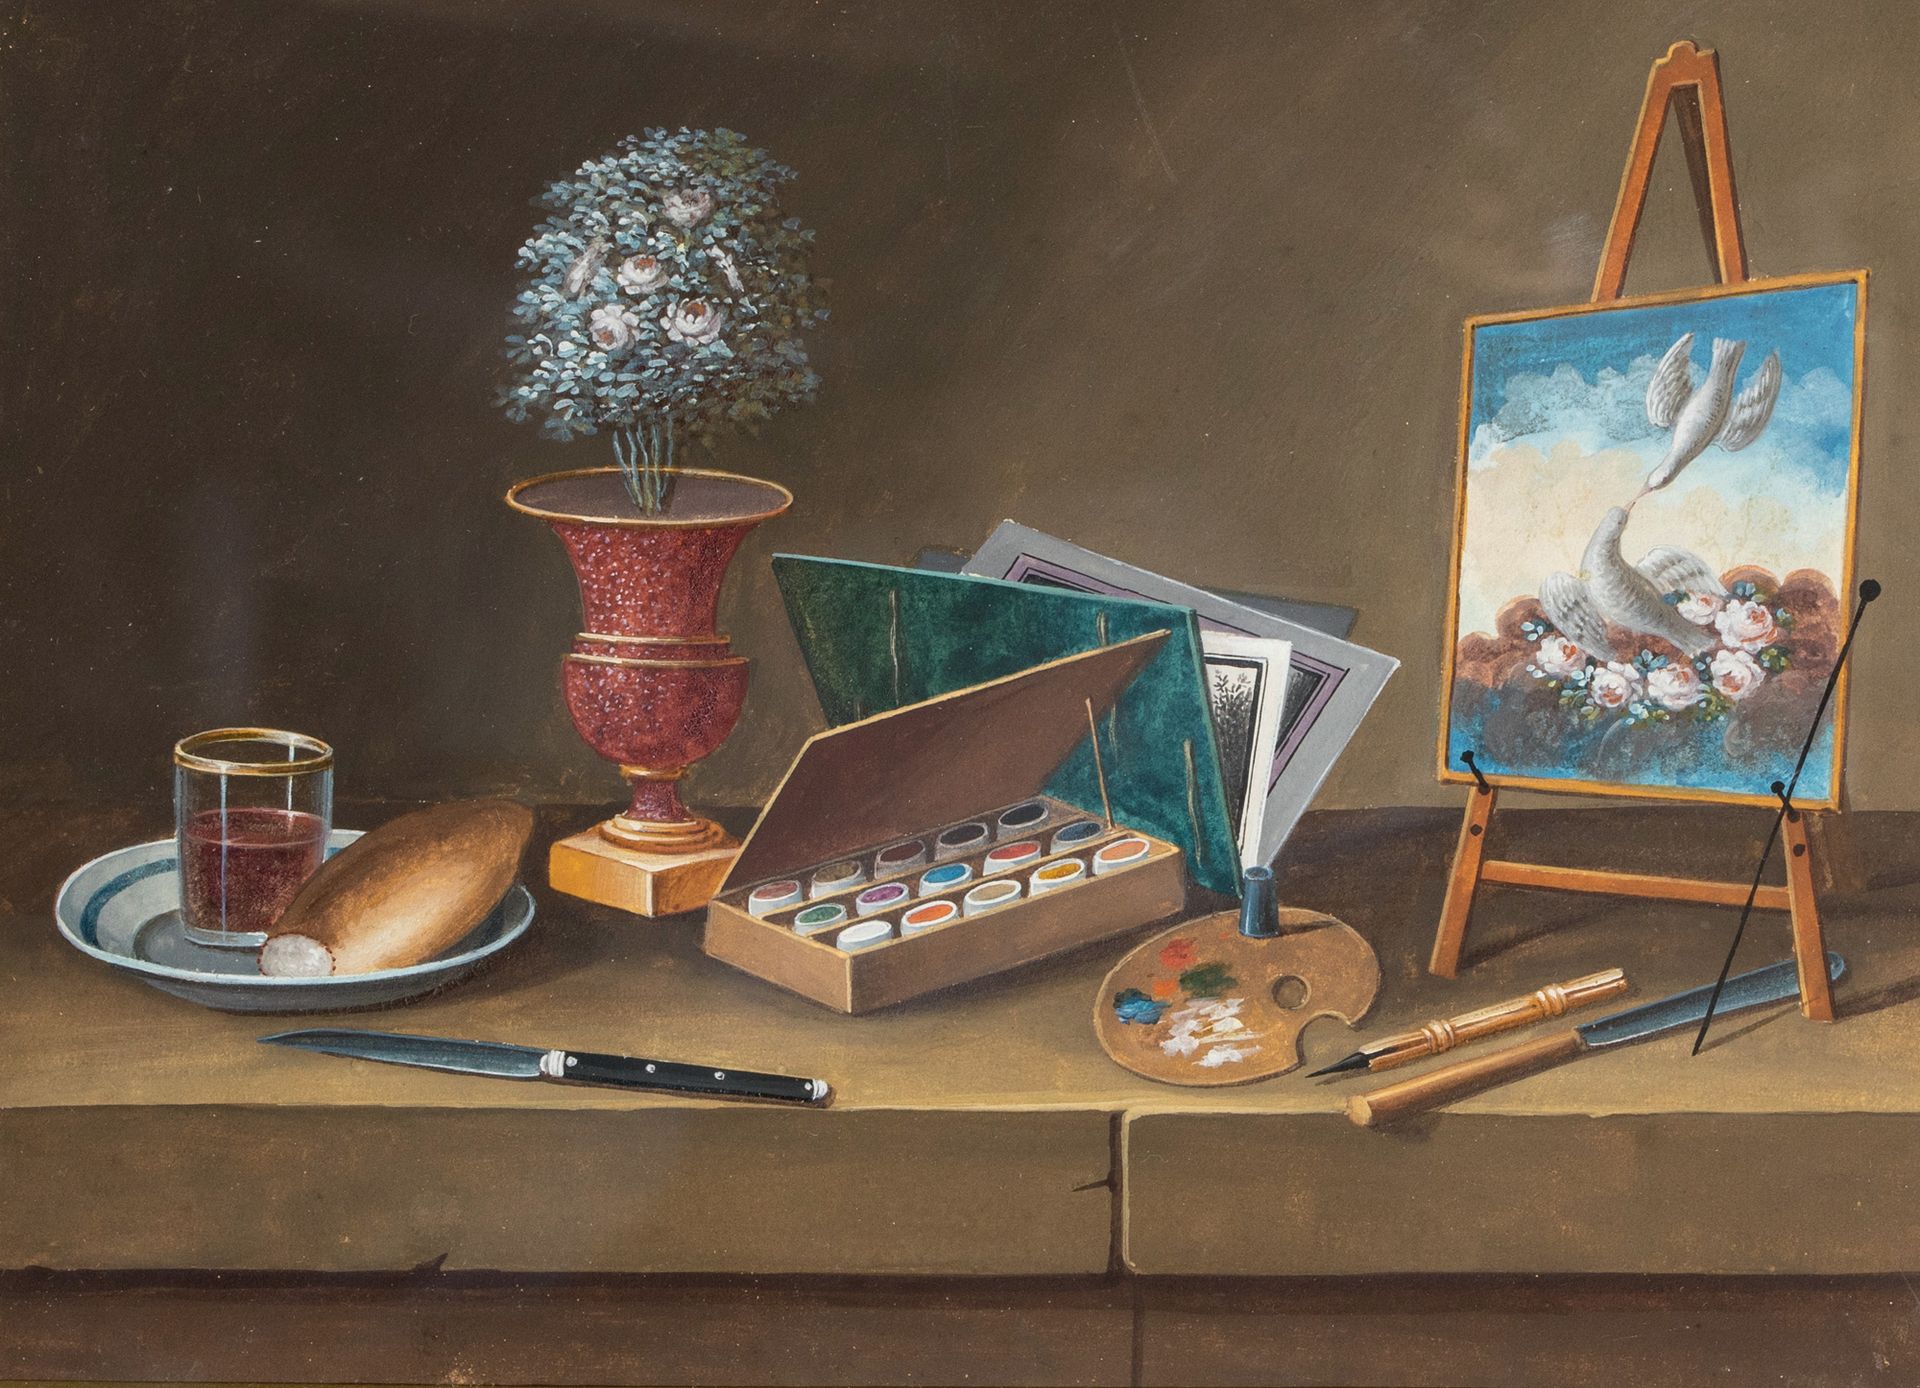 PAUL LELONG (1799-1846) 有曼陀林、桃子和花瓶的静物 纸上水粉画
15 x 20 cm (à vue)
有调色板、两只鸽子、面包和酒杯的静&hellip;